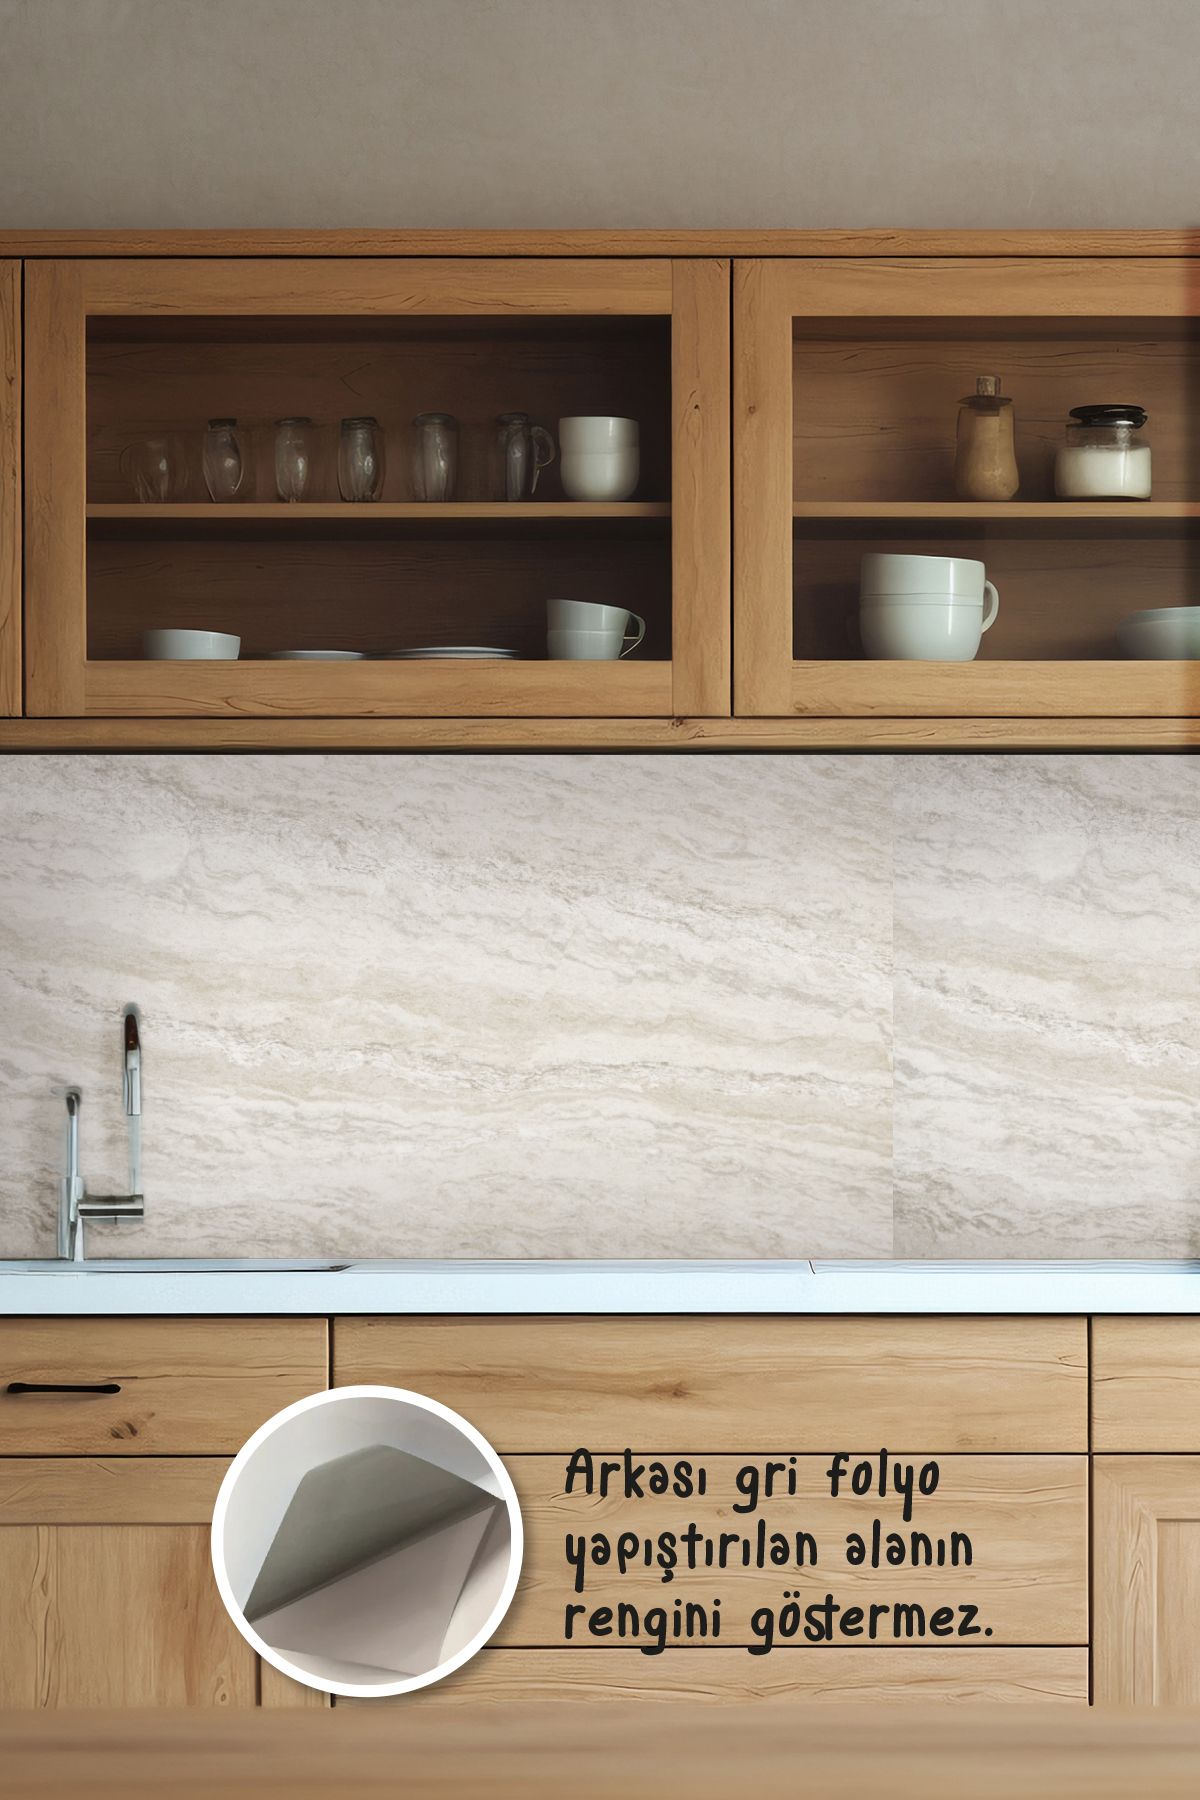 Tooall Mutfak Tezgah Arası Beyaz Desenli Folyo Kaplama Sticker, Uv Baskı, 100x50 cm